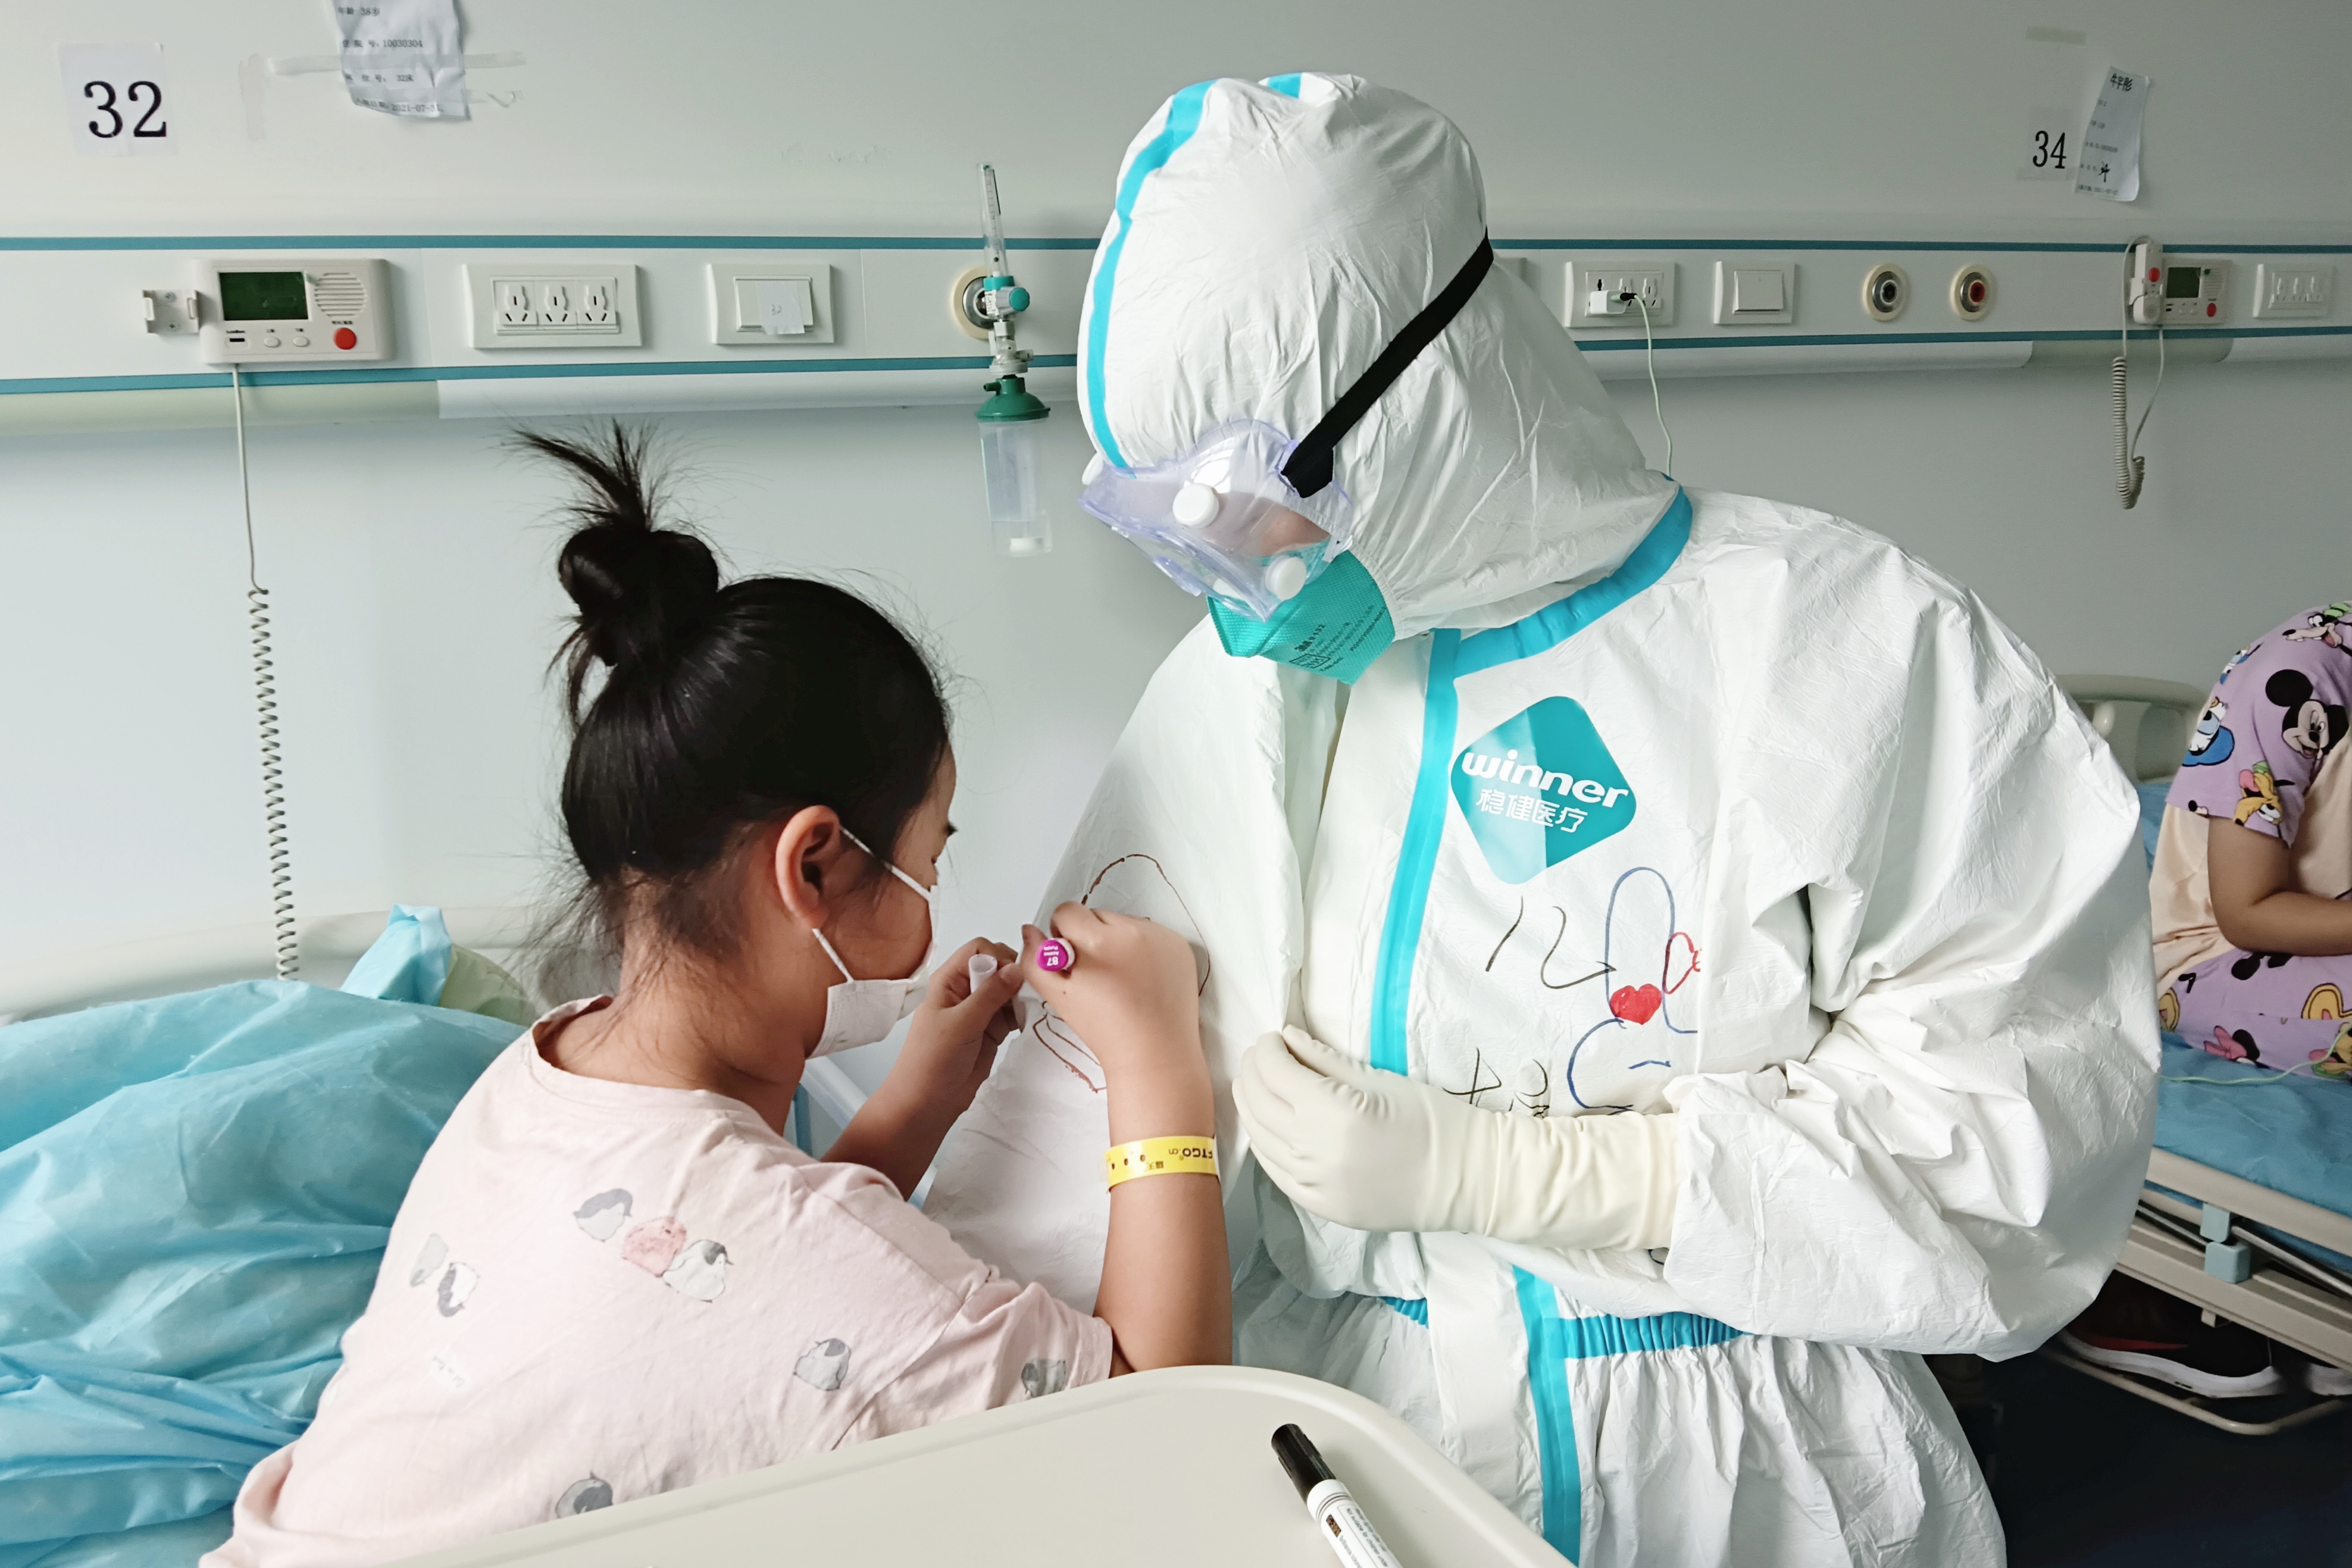 南京市儿童医院驻公卫中心医疗队圆满完成支援任务